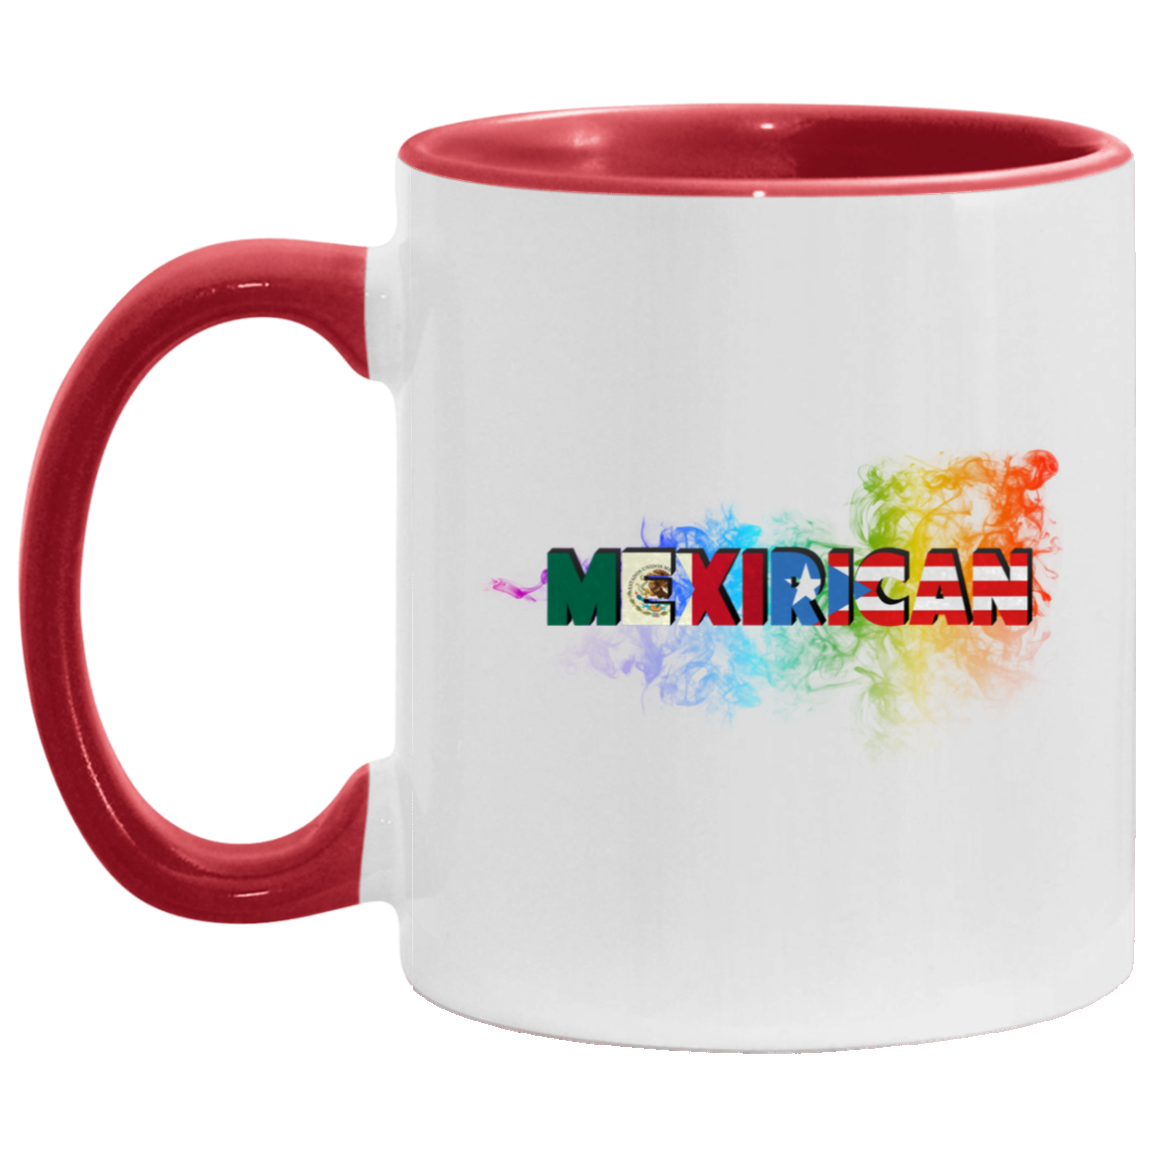 MexiRican 11OZ Accent Mug - Puerto Rican Pride